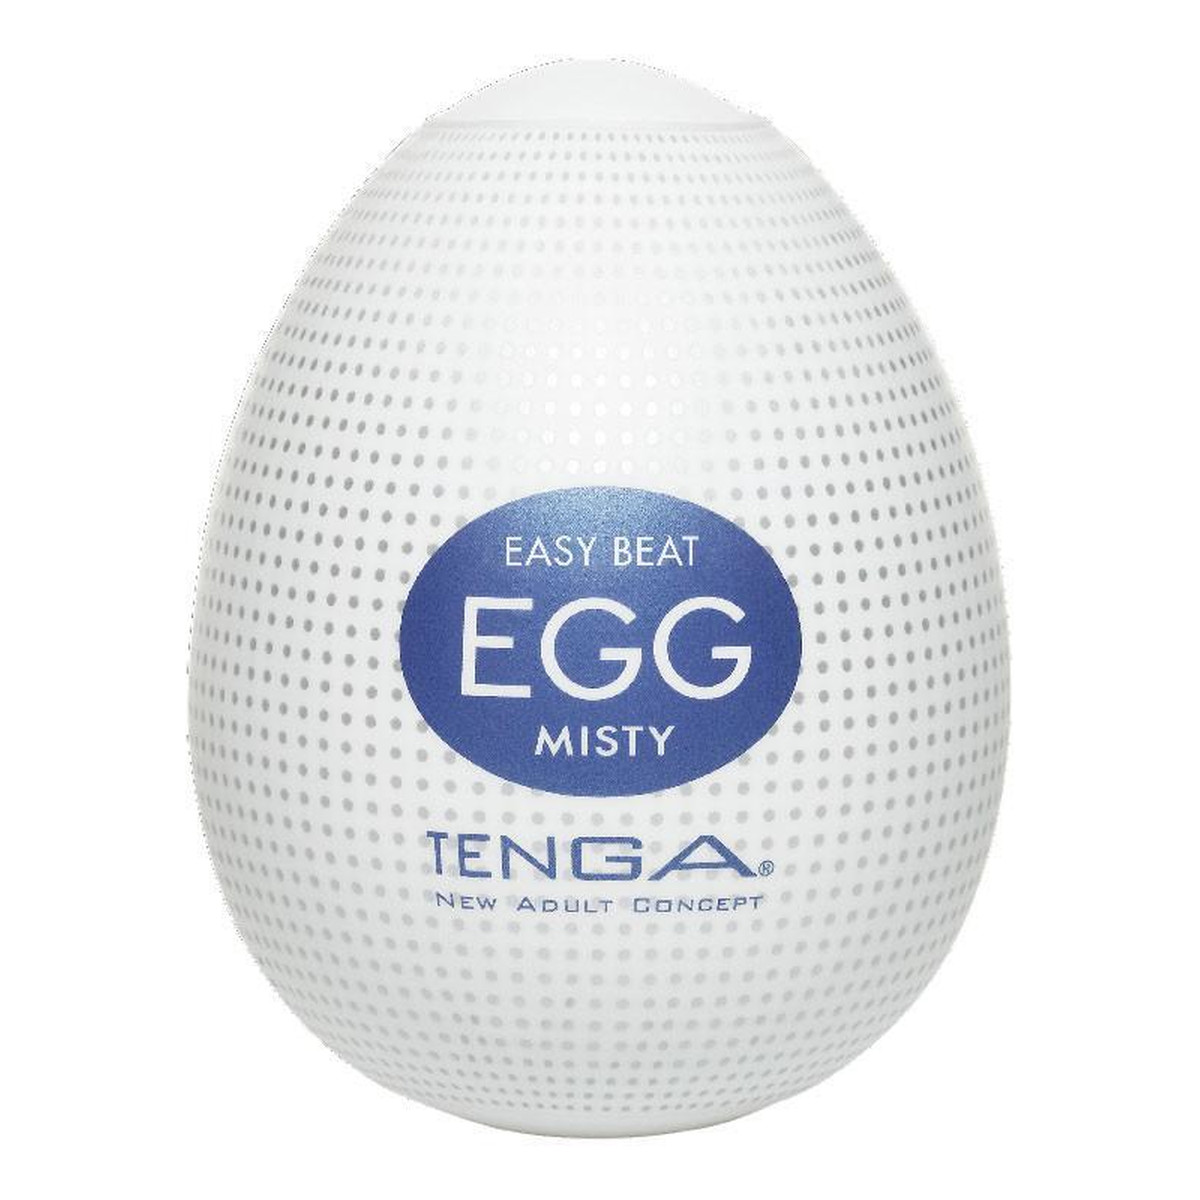 Tenga Easy beat egg misty jednorazowy masturbator w kształcie jajka